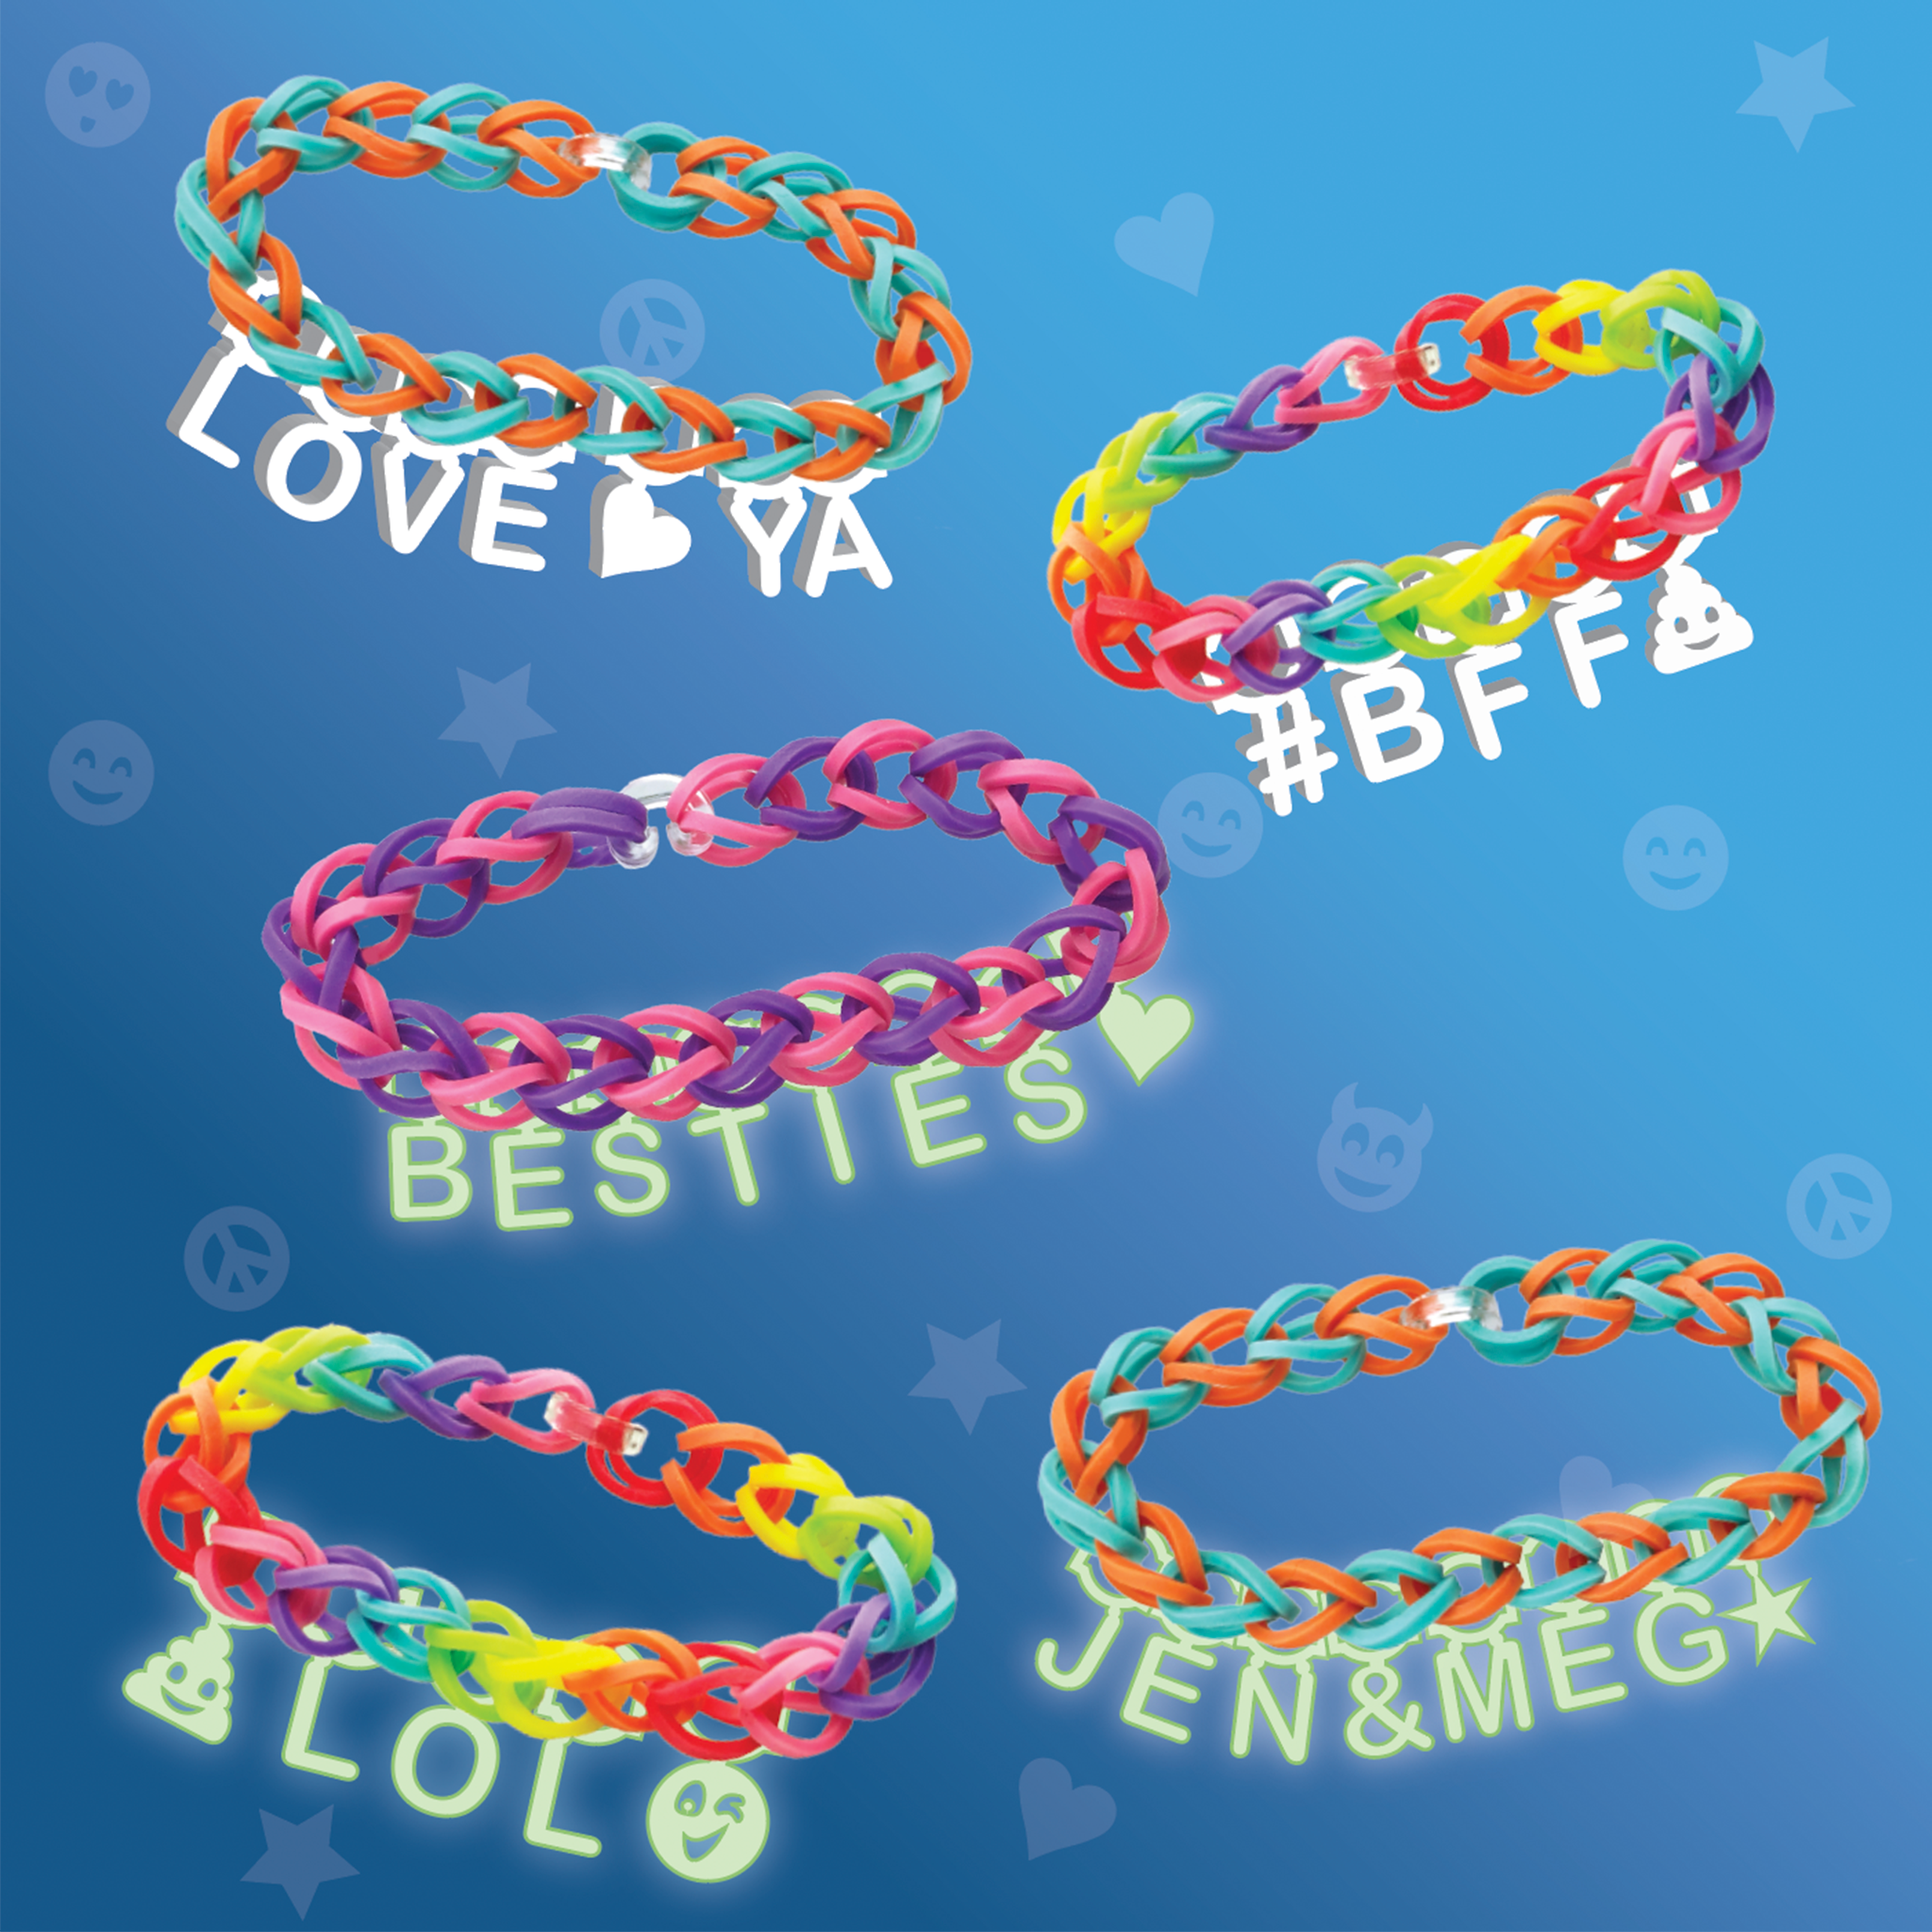 Beadmoji™ Bracelet Kit - GOOD VIBES – Rainbow Loom USA Webstore